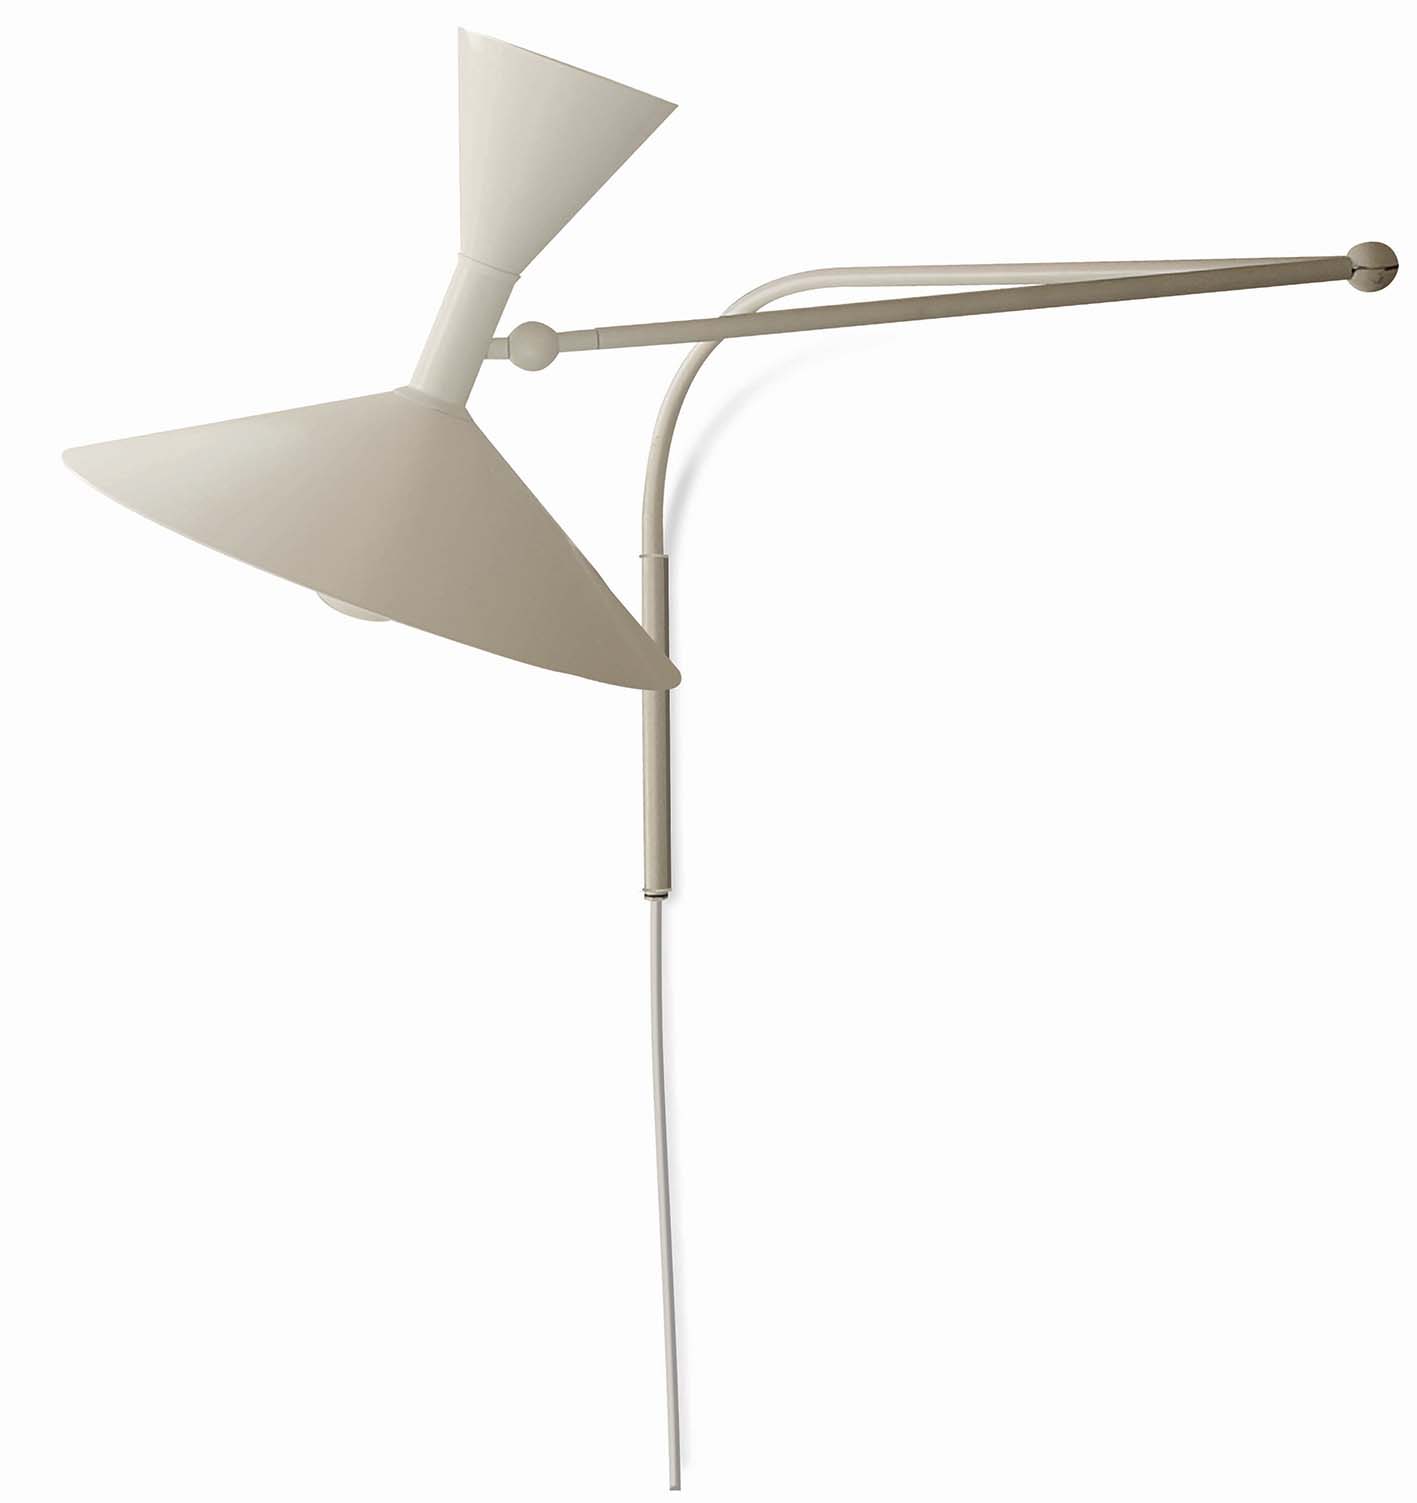 Lampe de Marseille, design di Le Corbusier, Nemo.